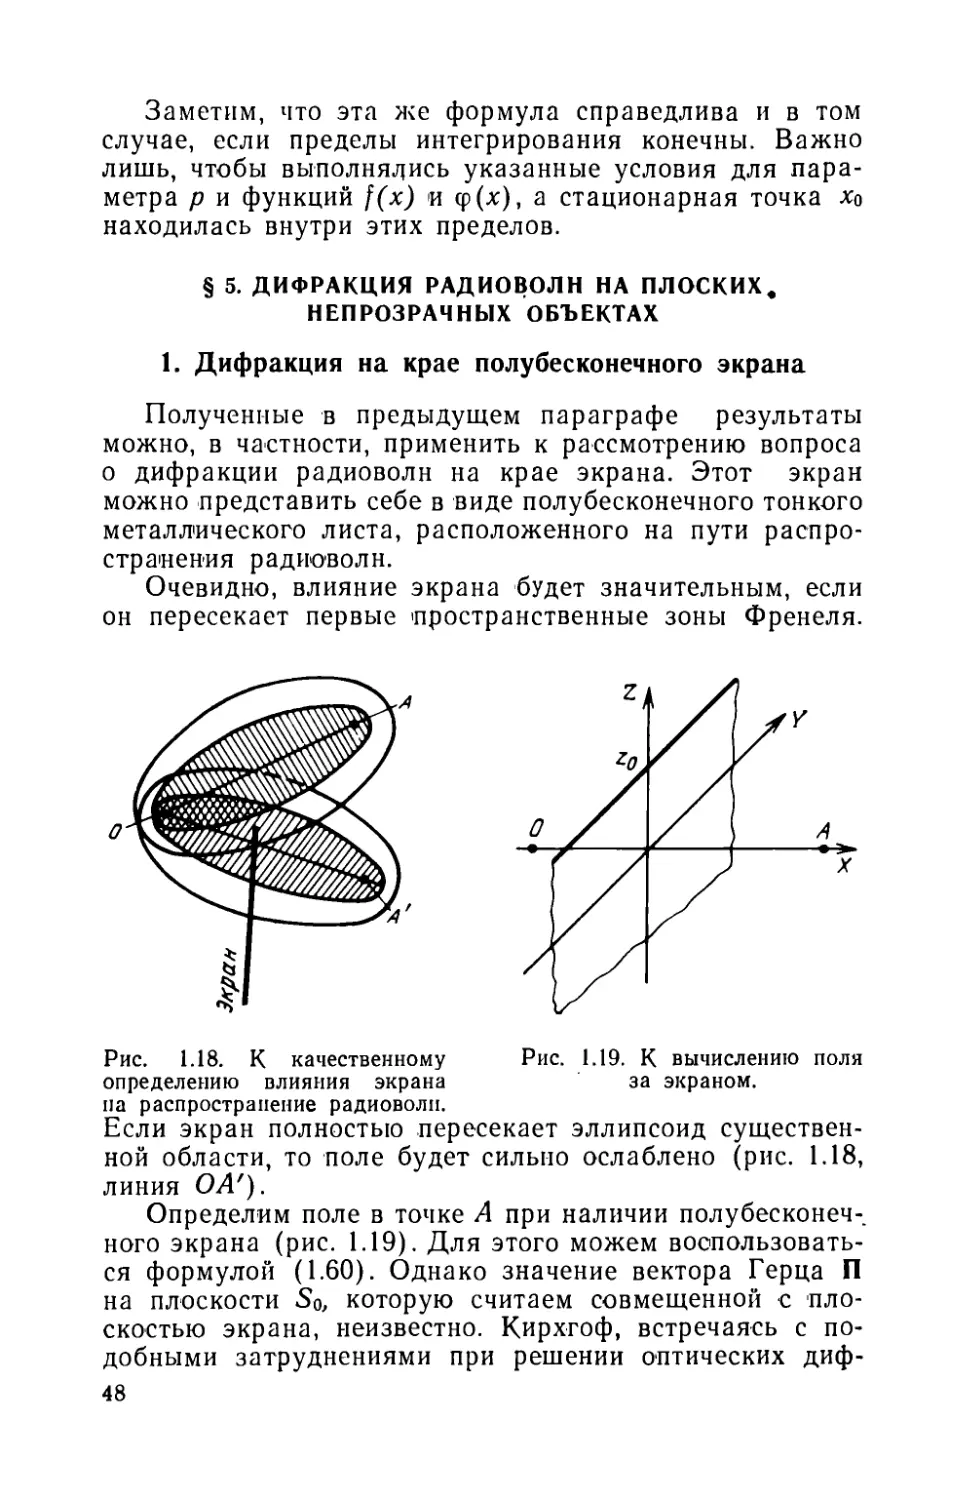 § 5. Дифракция радиоволн на плоских непрозрачных объектах